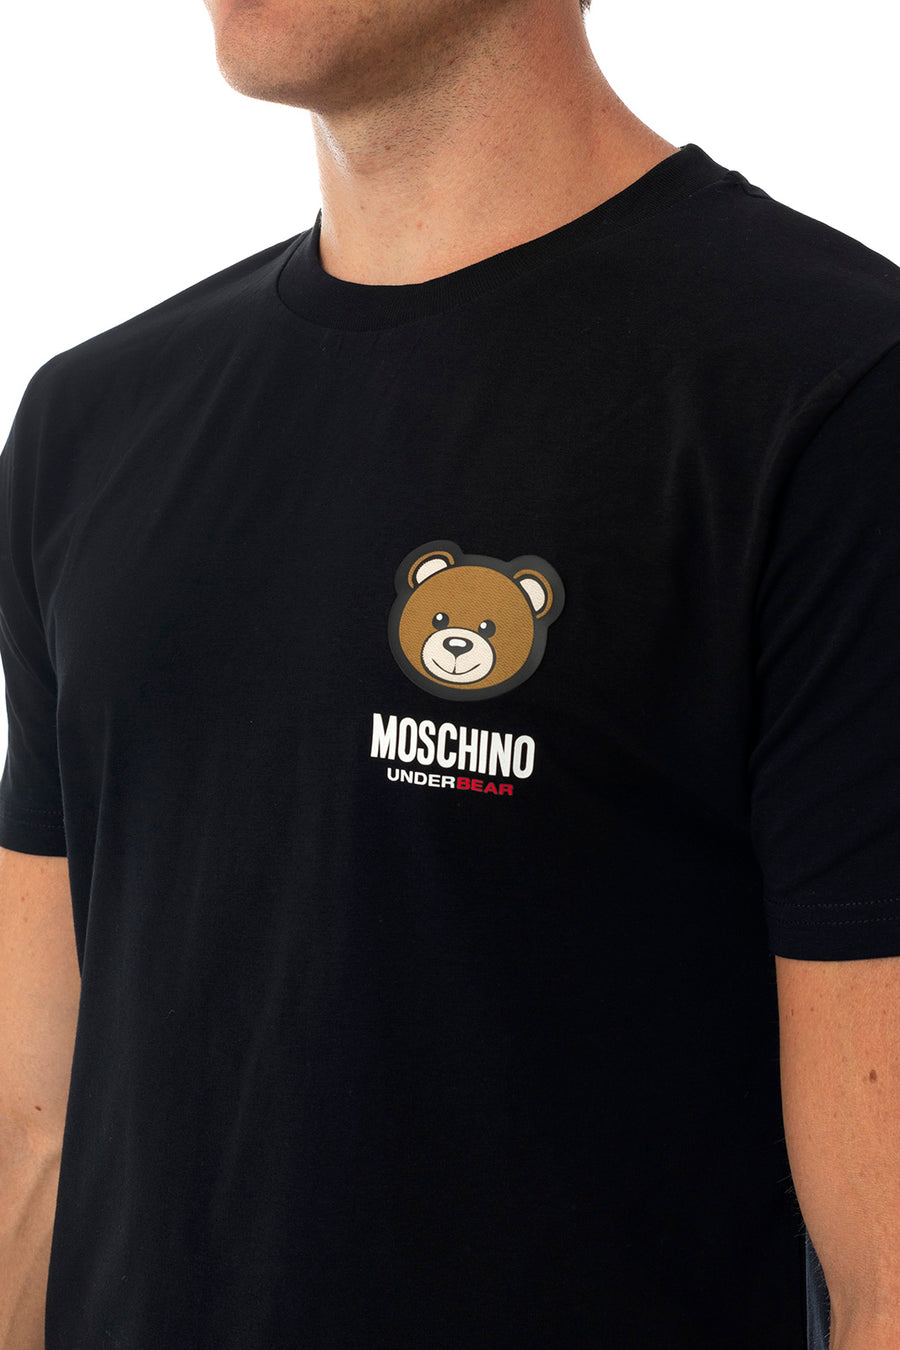 T-shirt MOSCHINO V1A0788 4410